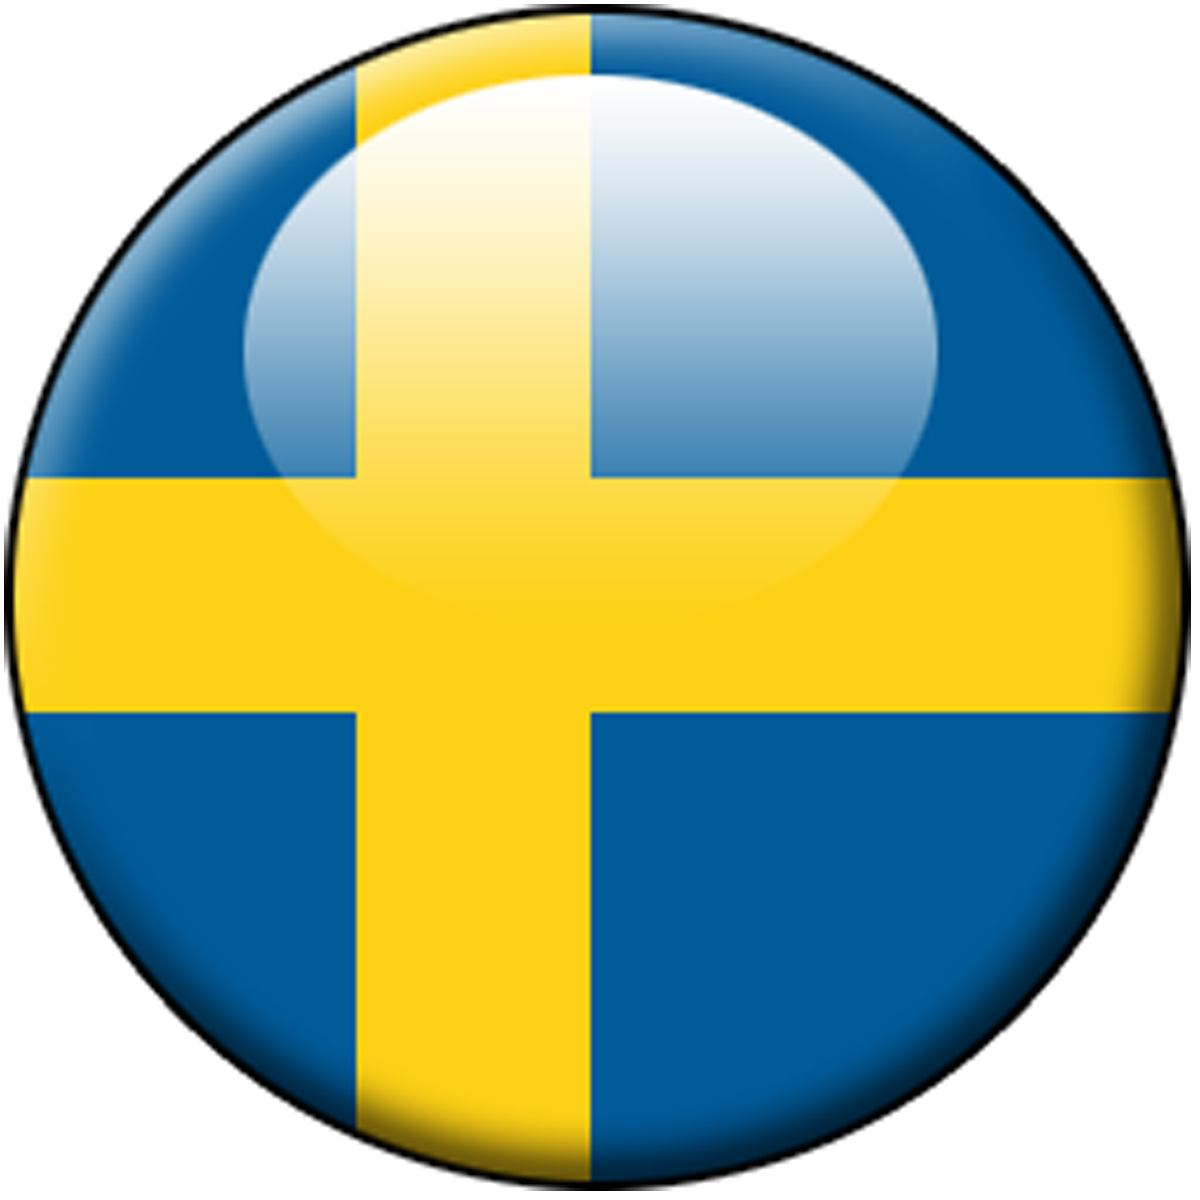 スウェーデンの旗の壁紙,黄,国旗,エレクトリックブルー,サークル,シンボル